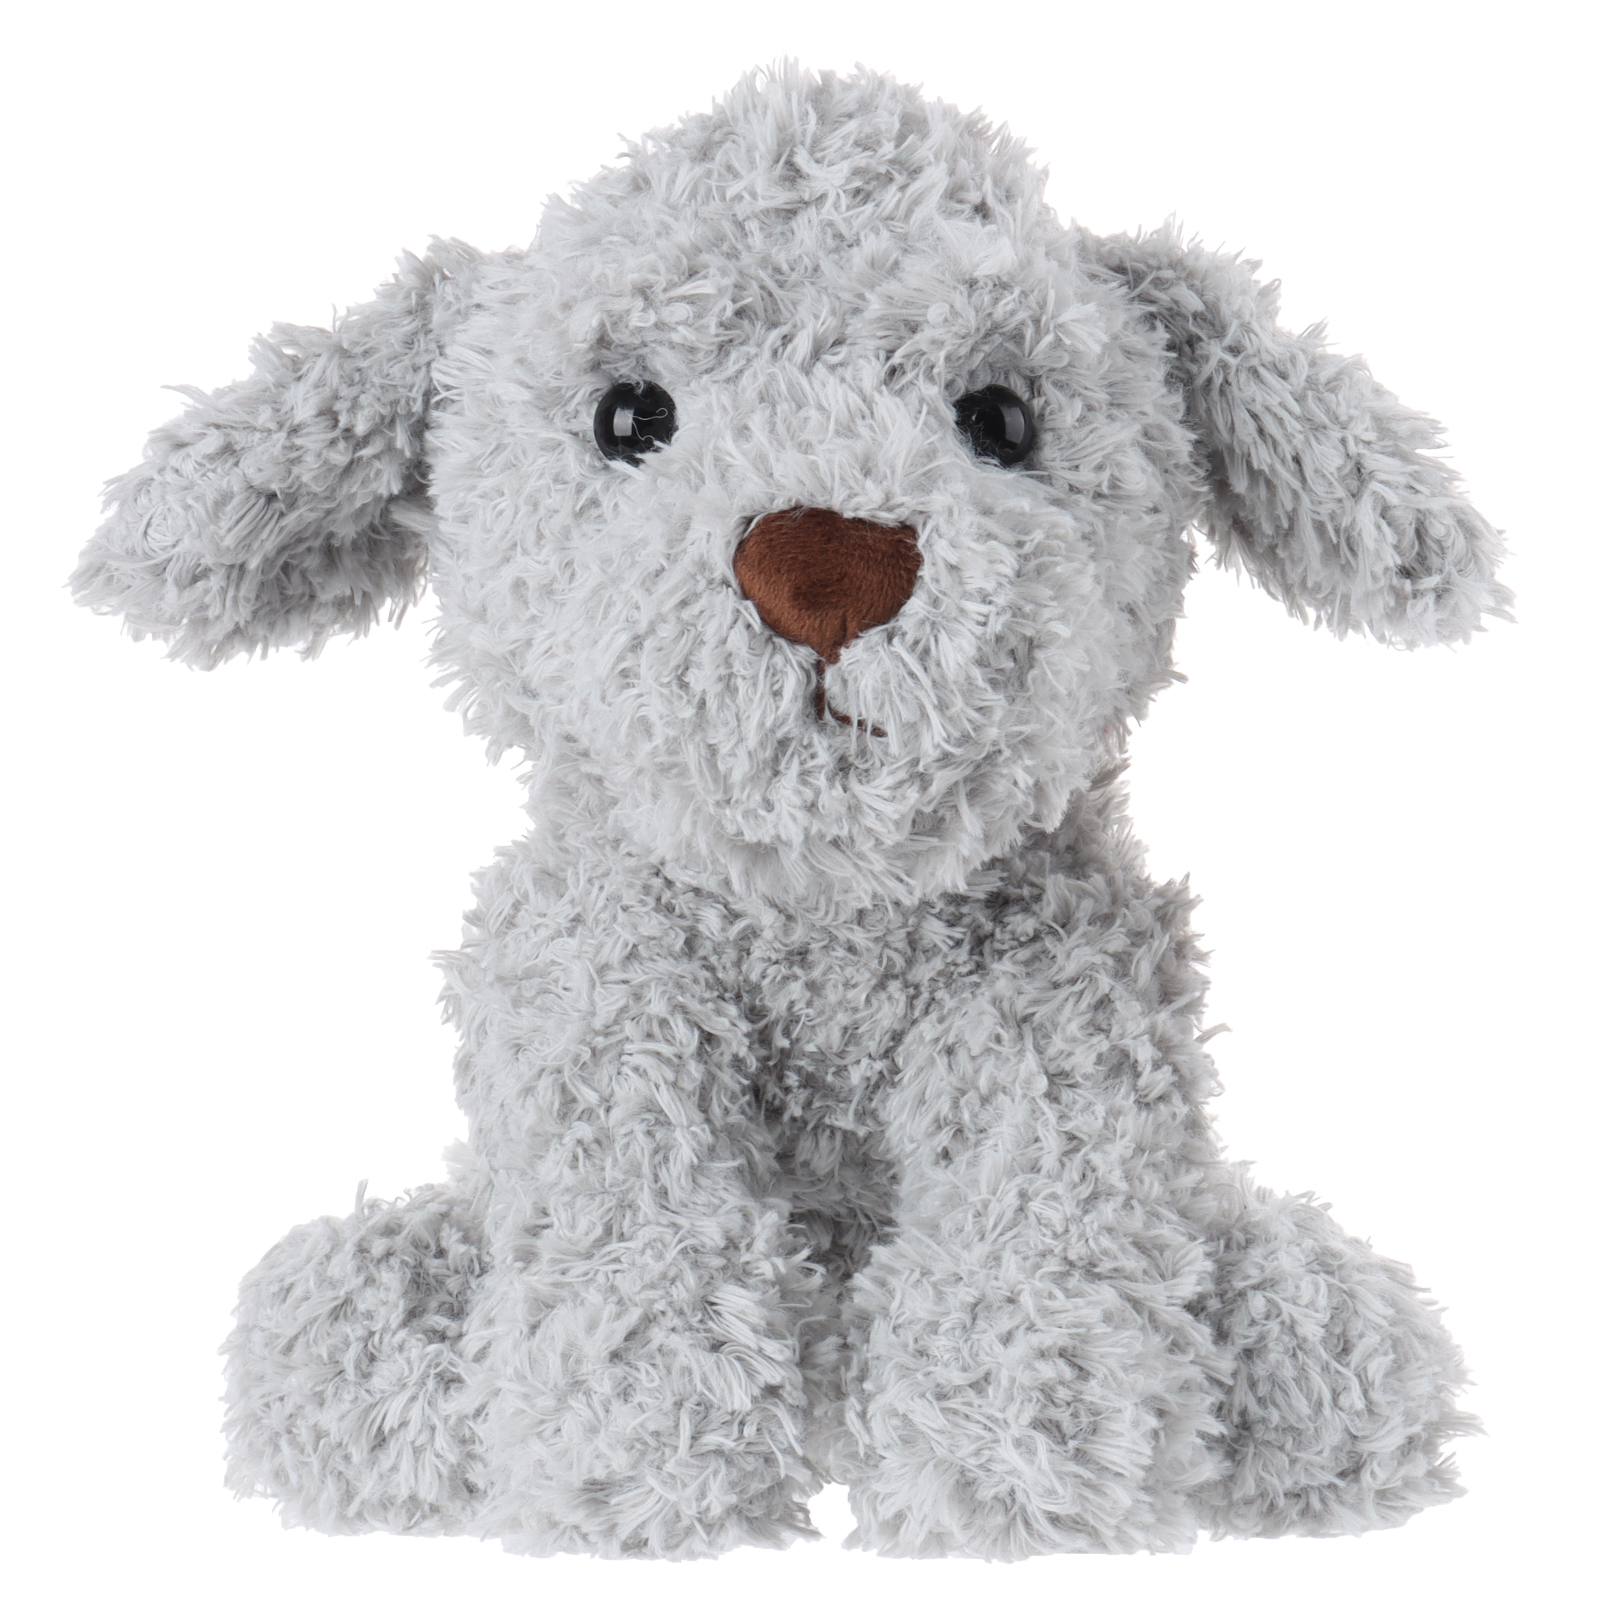 Apricot Lamb Vid Puppy Gray Stuffed Animal Soft Plush Toys